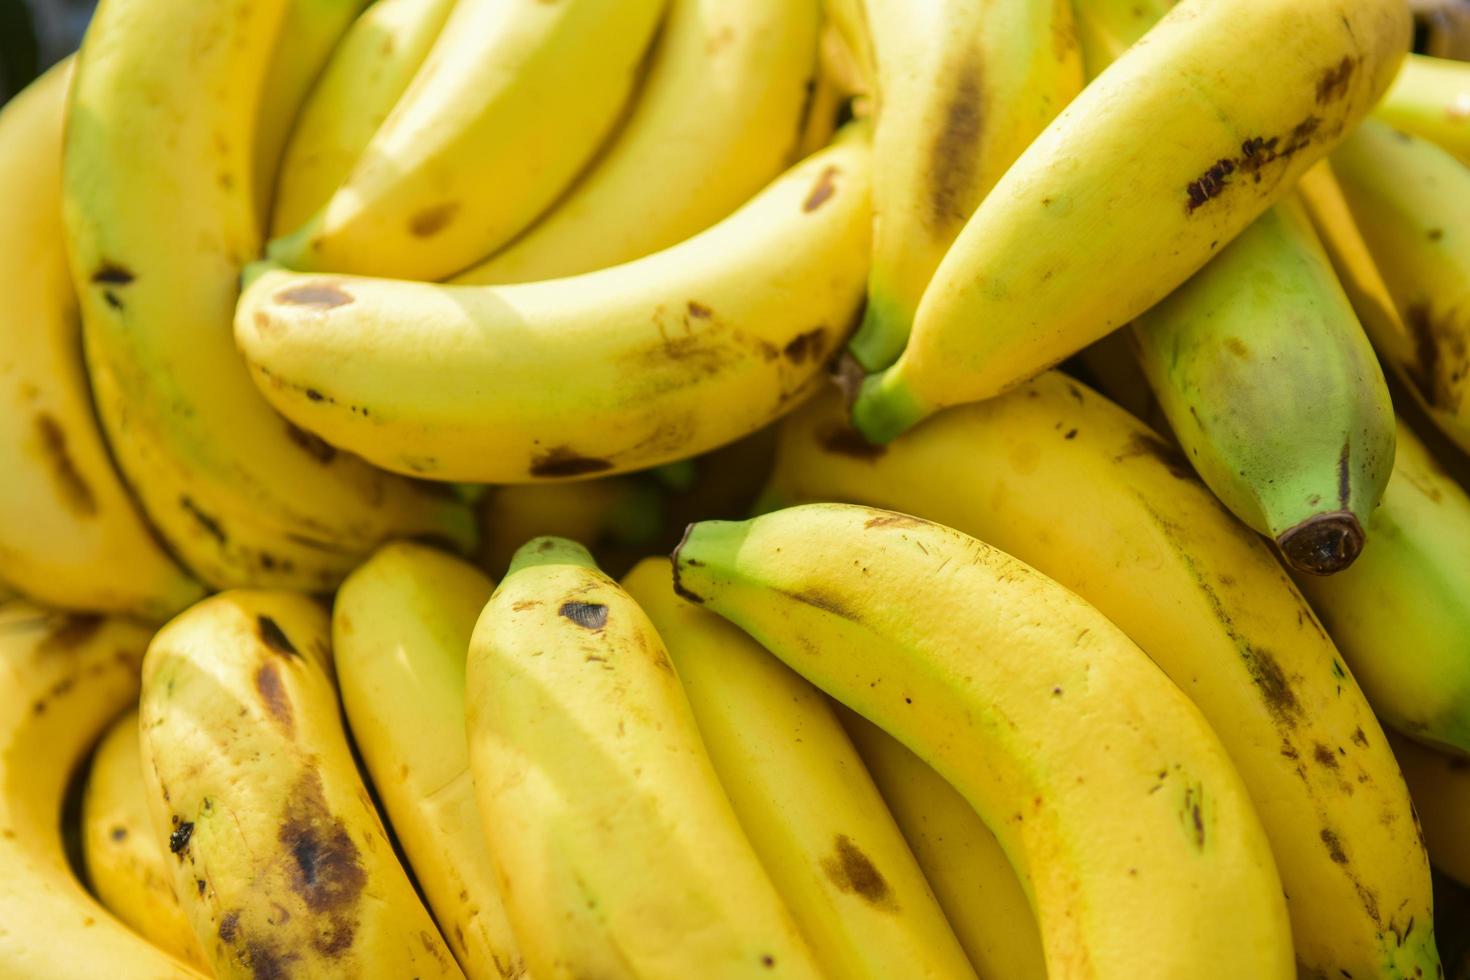 Banana, close up view photo